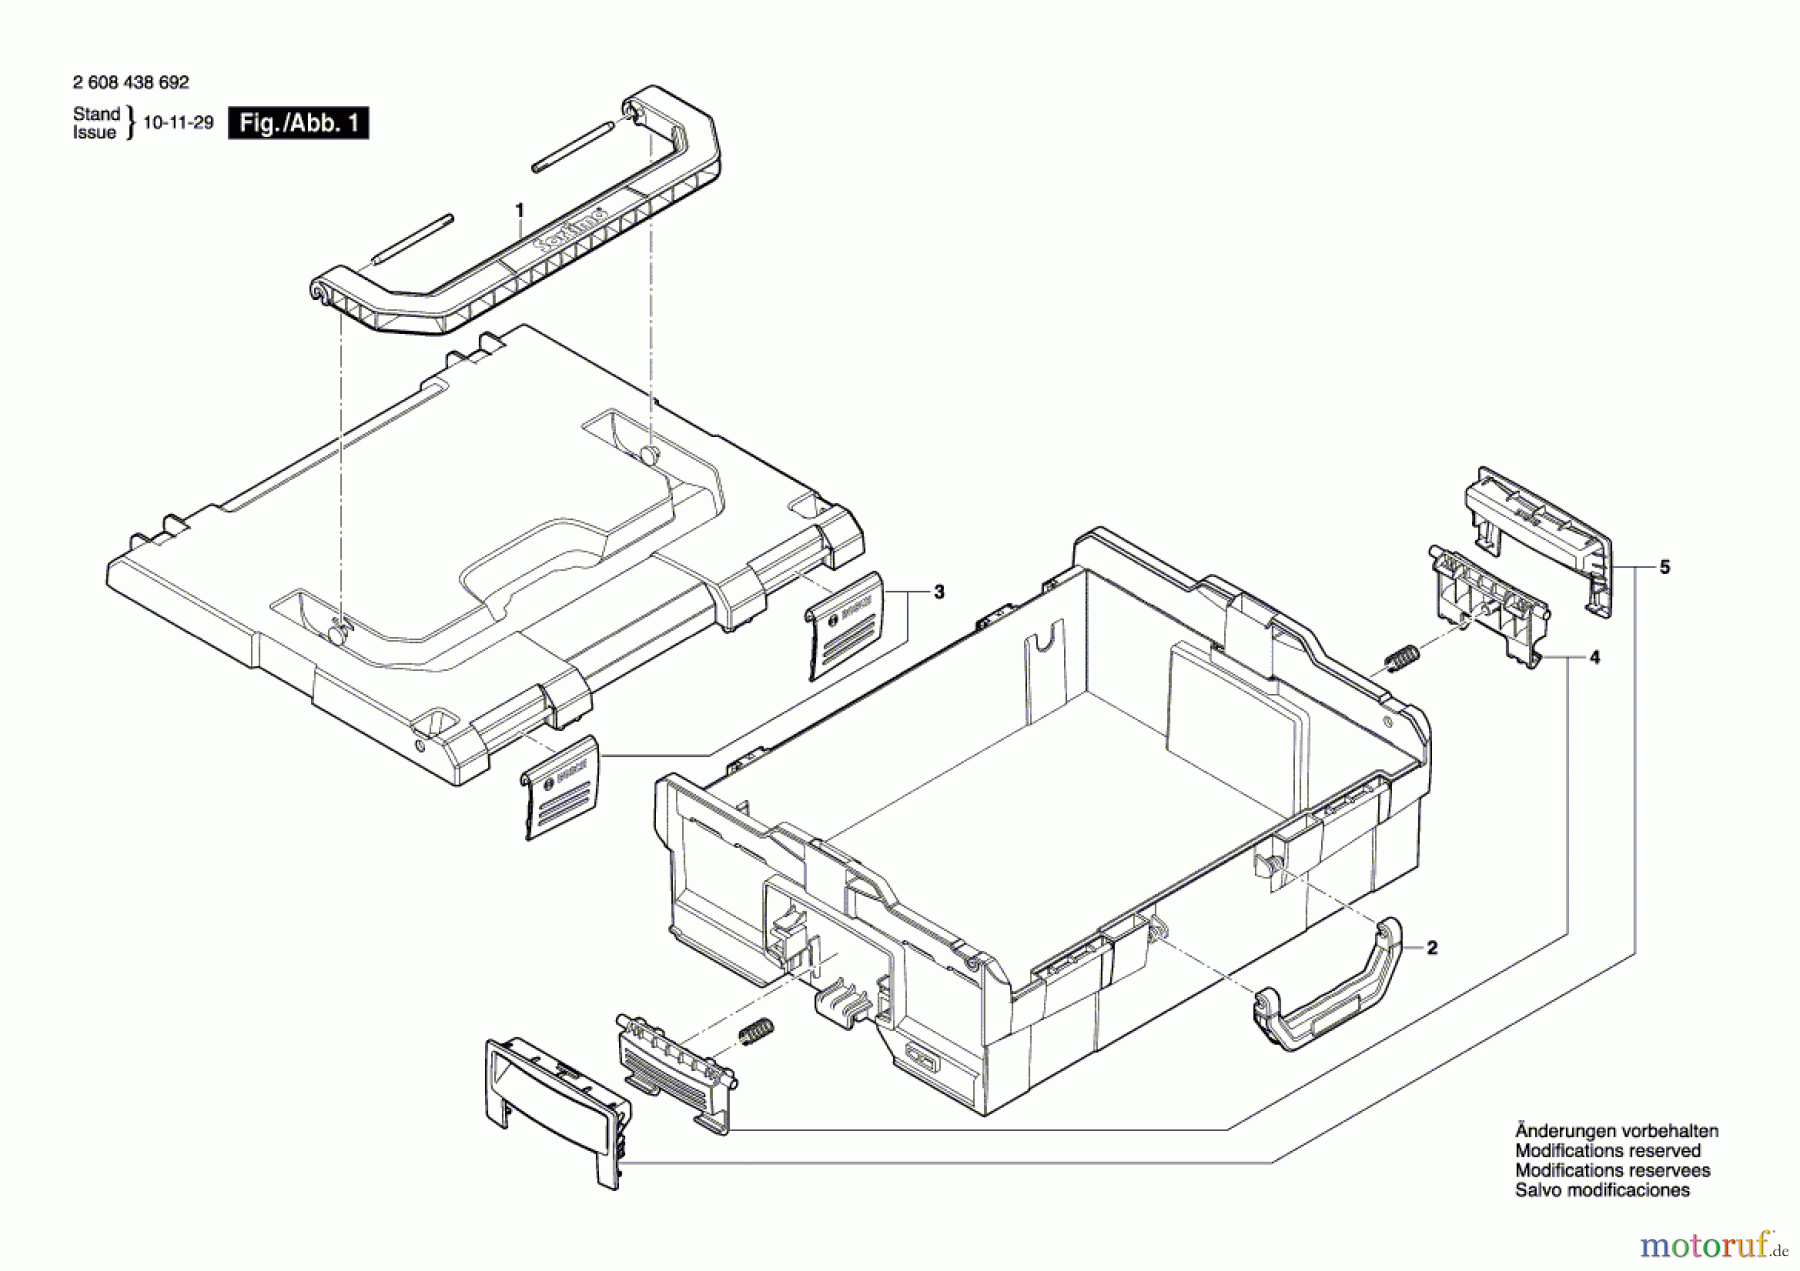  Bosch Werkzeug Tragkasten L-Boxx 136 Seite 1